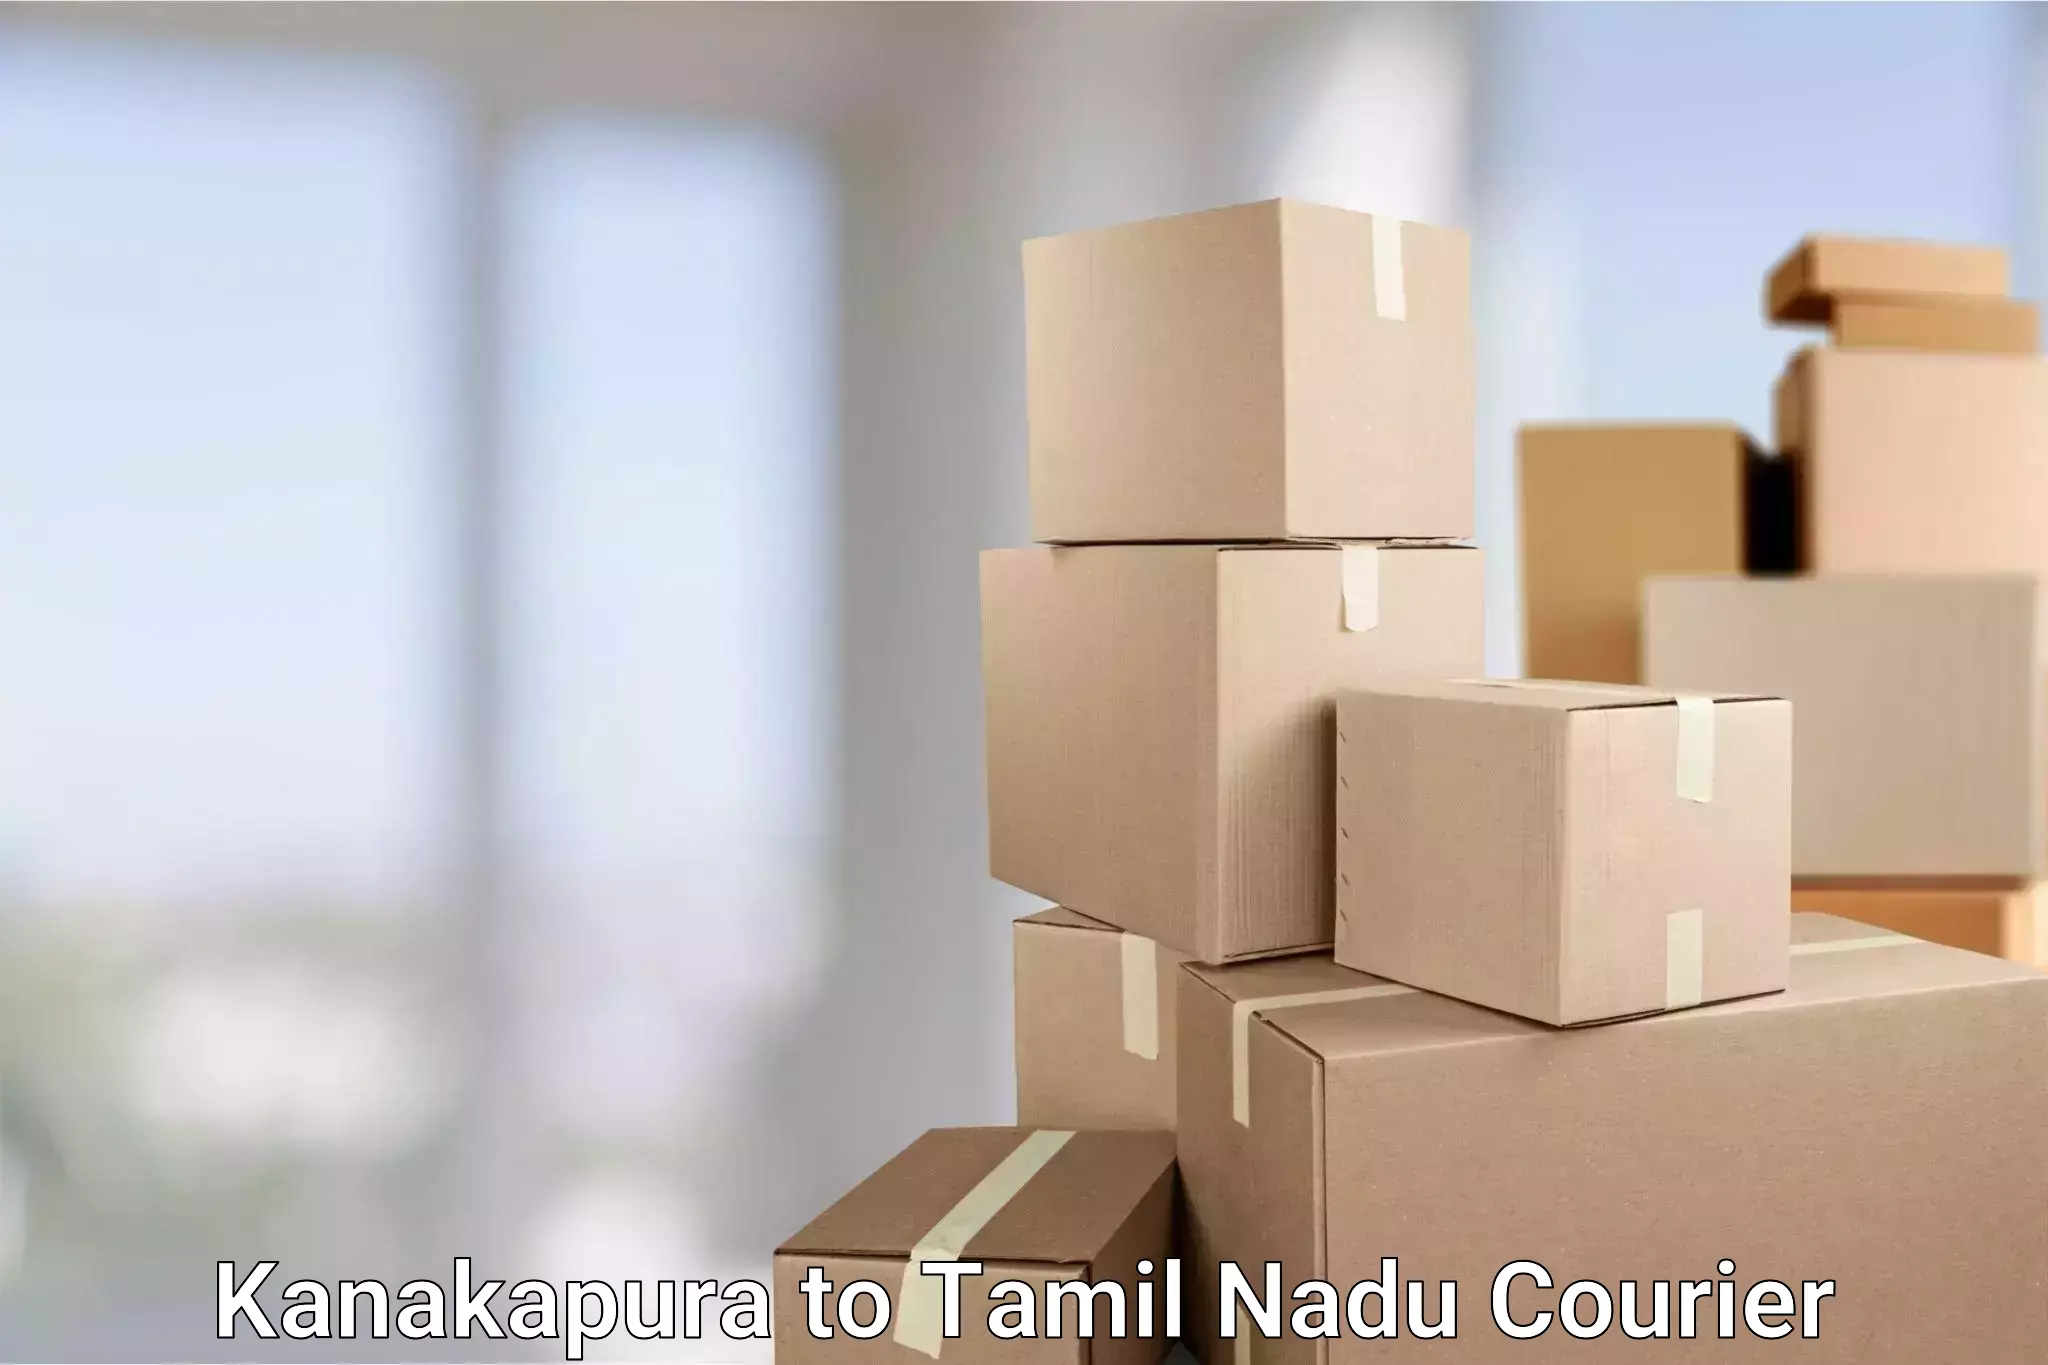 Subscription-based courier Kanakapura to Tirunelveli